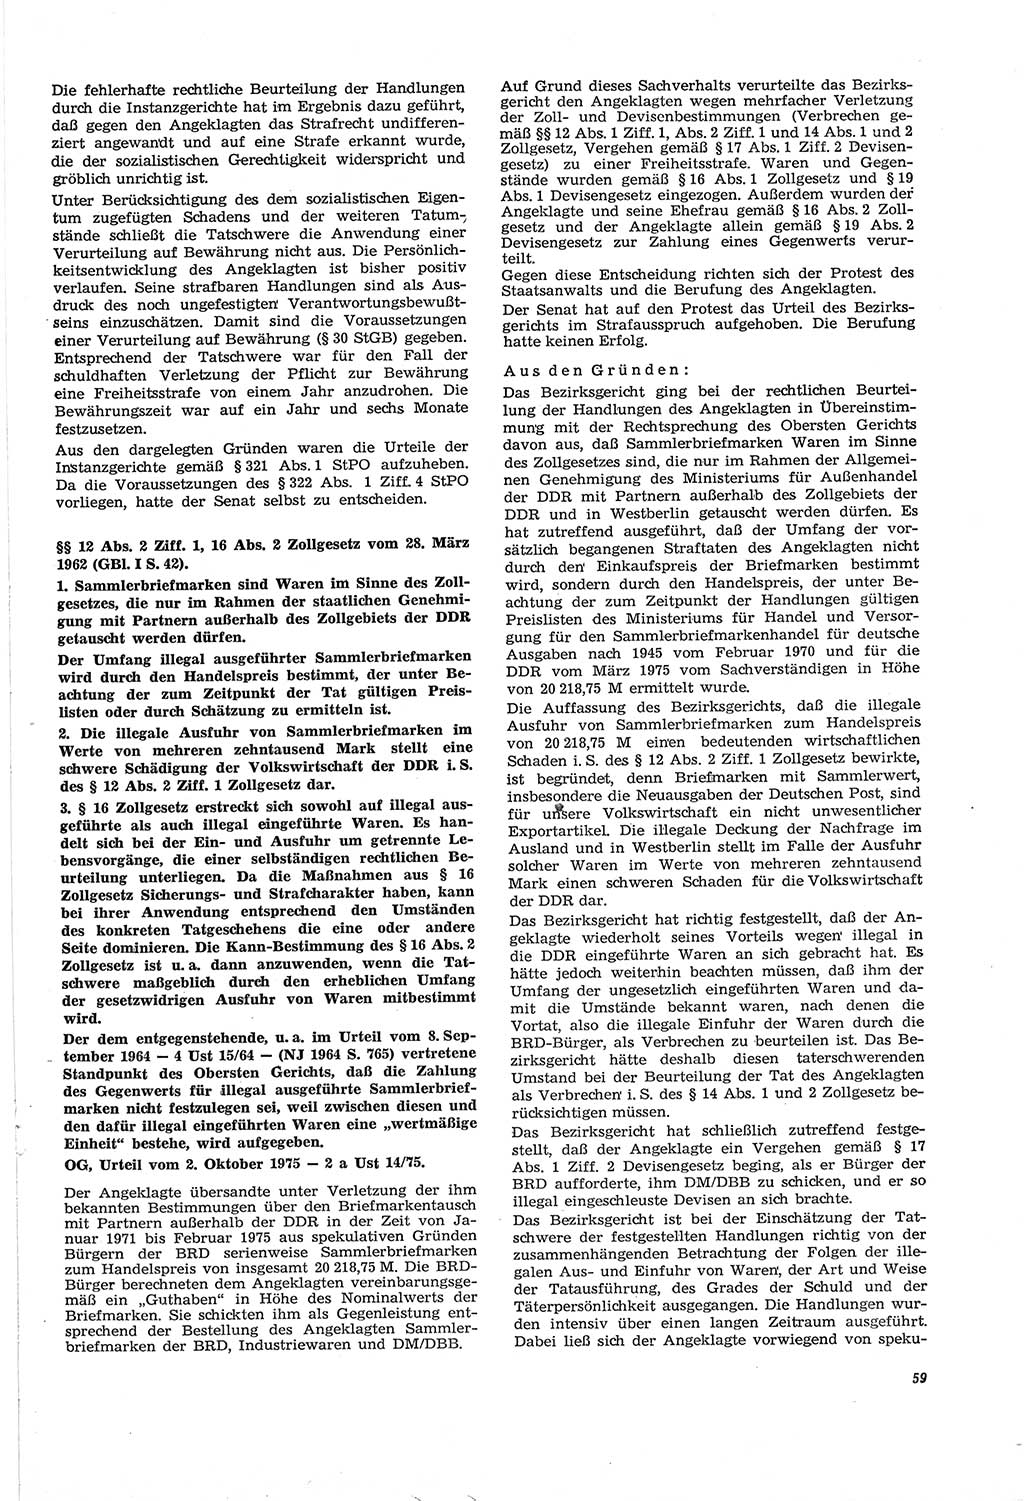 Neue Justiz (NJ), Zeitschrift für Recht und Rechtswissenschaft [Deutsche Demokratische Republik (DDR)], 30. Jahrgang 1976, Seite 59 (NJ DDR 1976, S. 59)